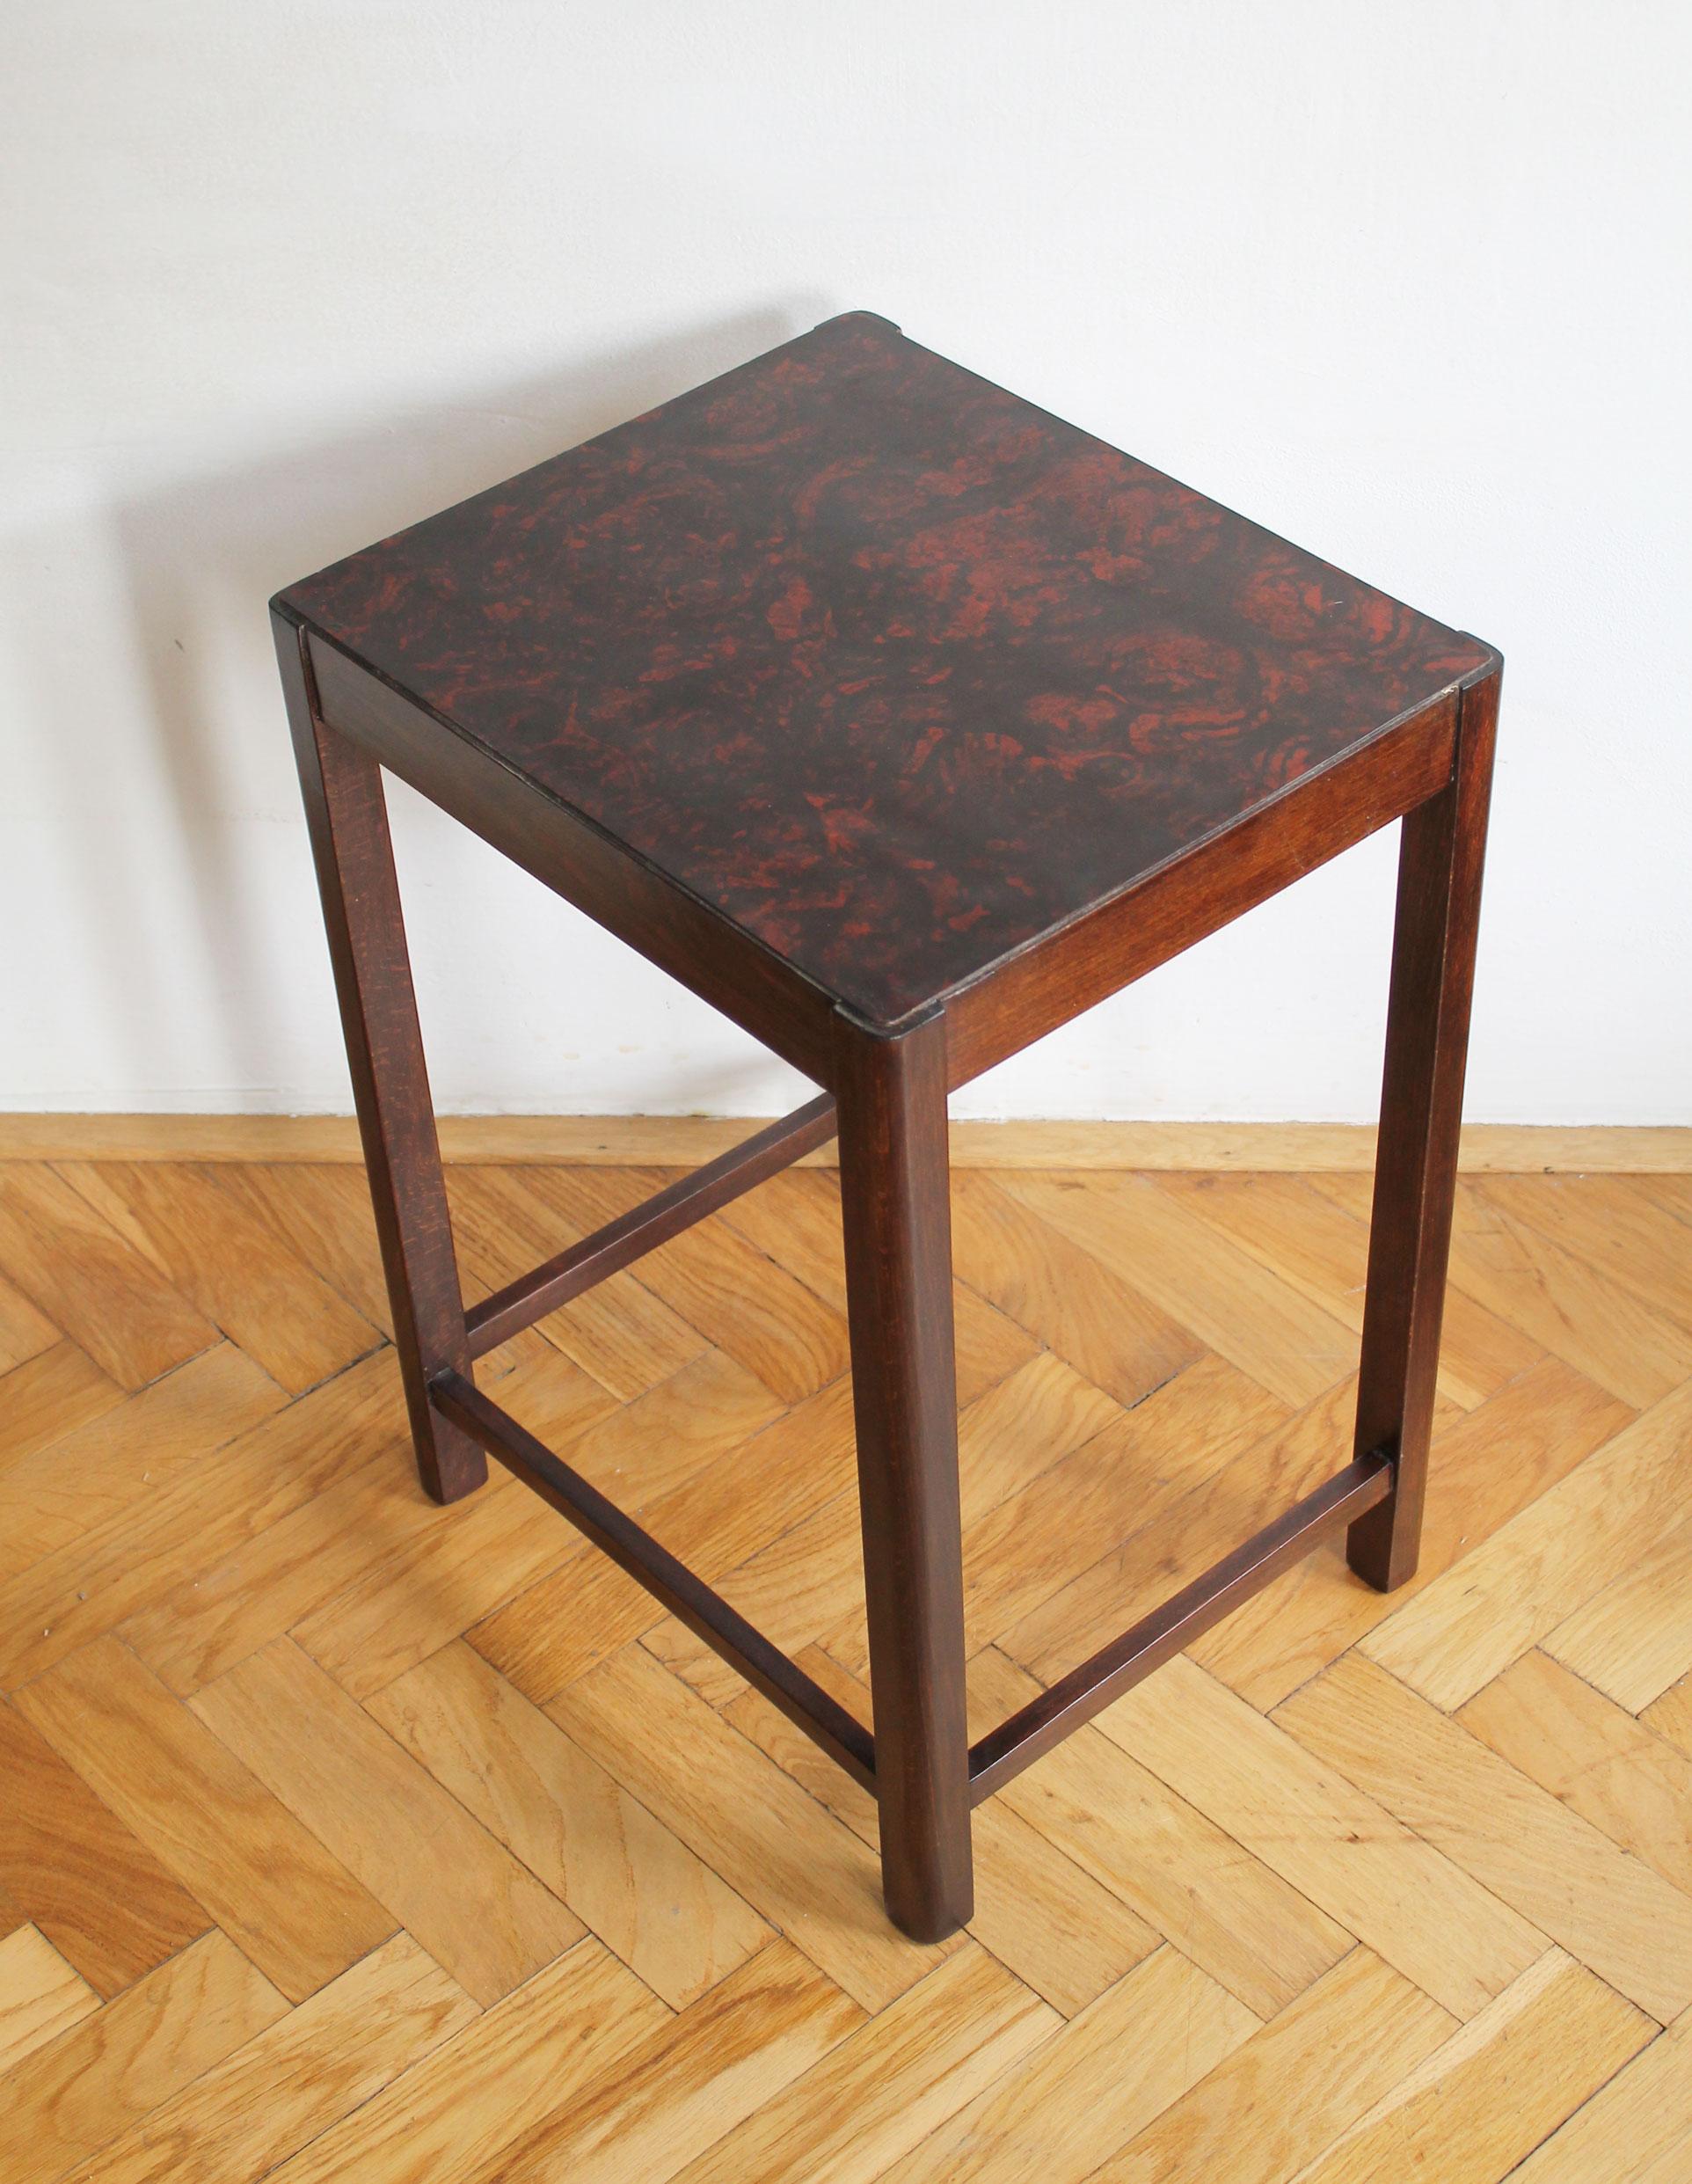 Rare table d'appoint conçue par Thonet et produite dans l'usine de la société dans l'ancienne Tchécoslovaquie.

Cette pièce a été produite dans les années 1930 et son design témoigne d'une évolution vers une esthétique moderniste puriste. Les